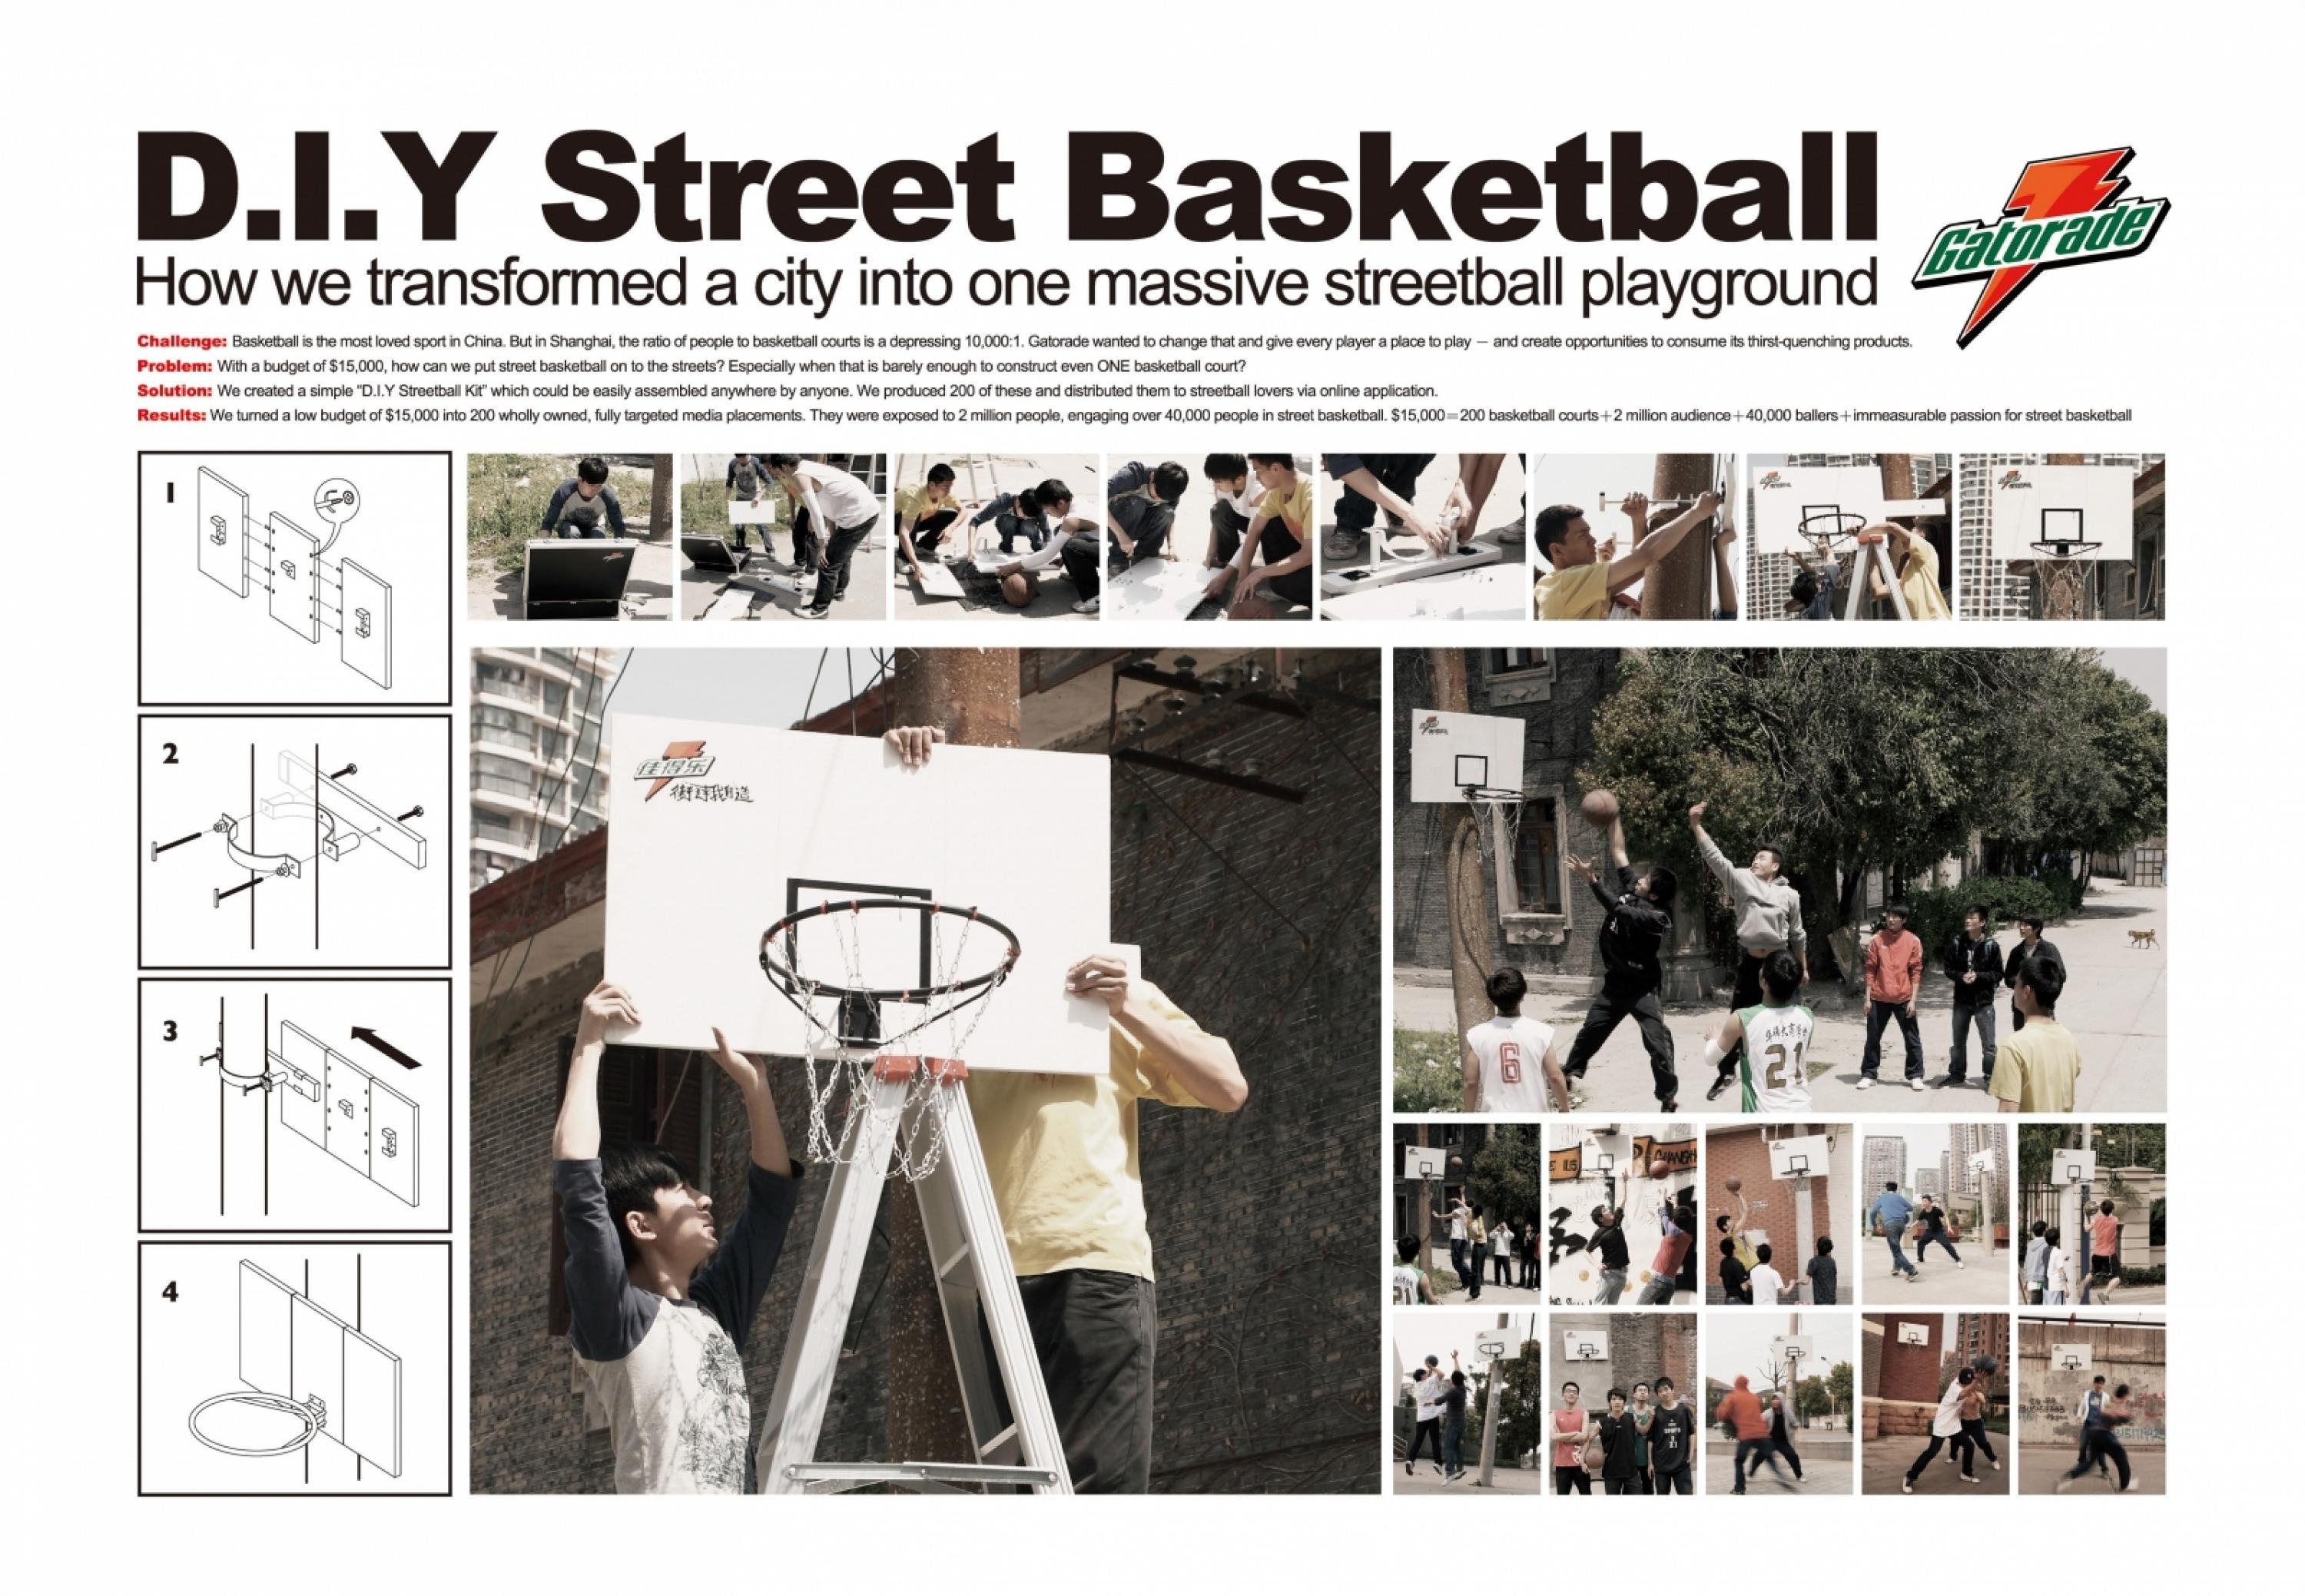 D.I.Y STREET BASKETBALL